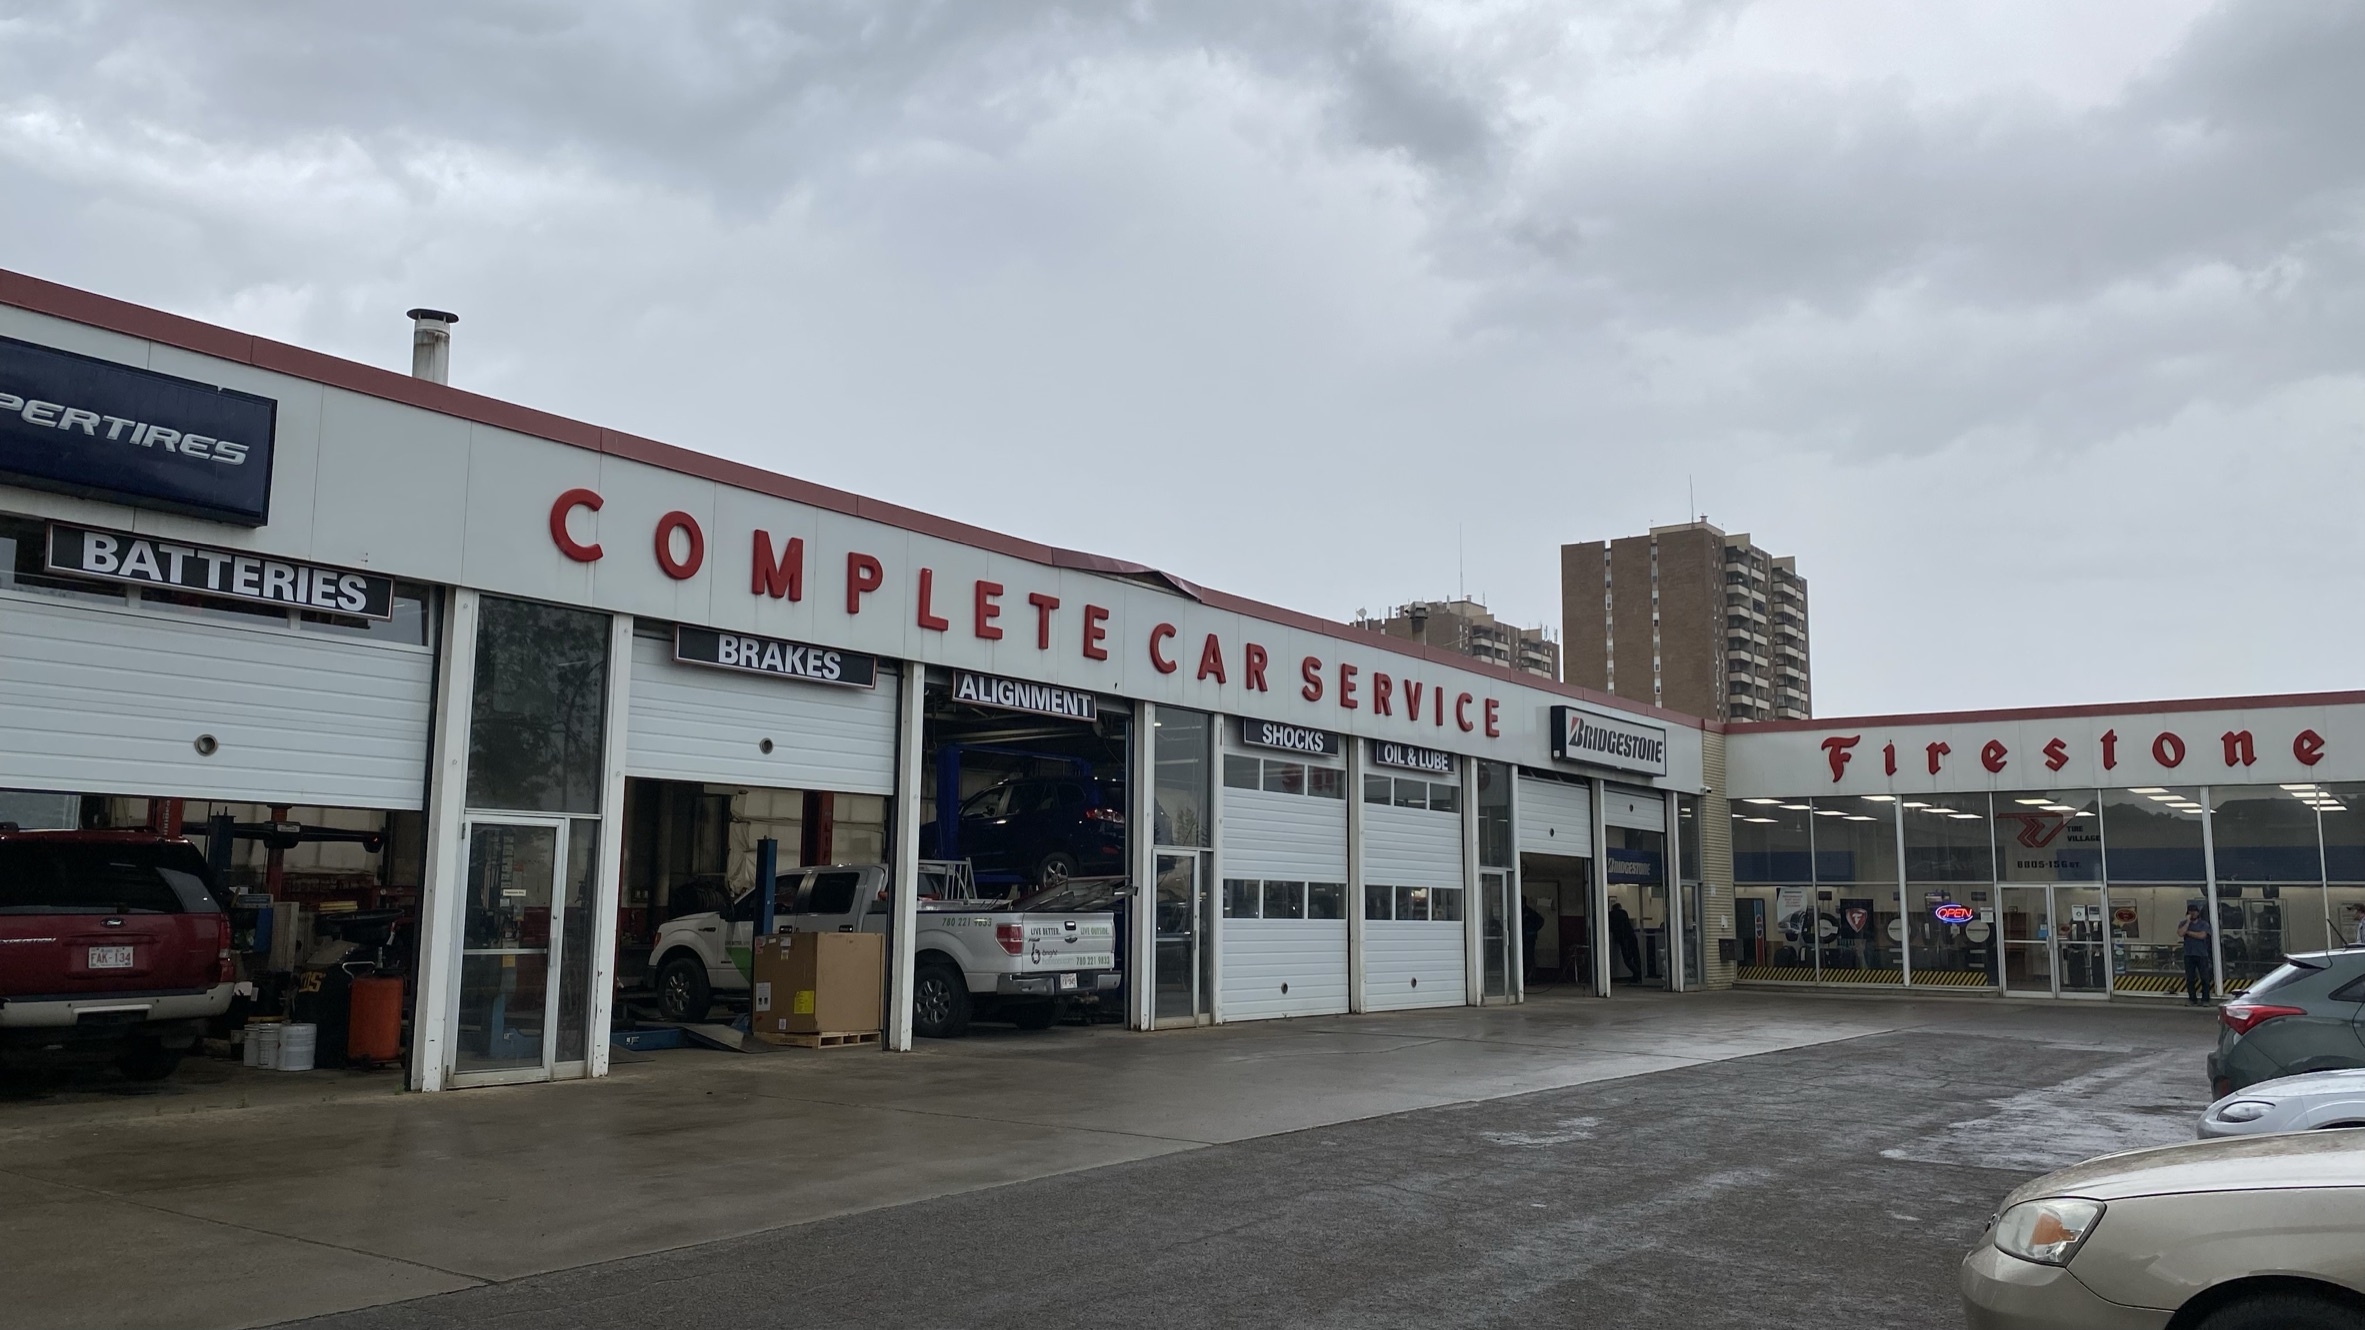 Trail Tire Auto Centers / Edmonton store front